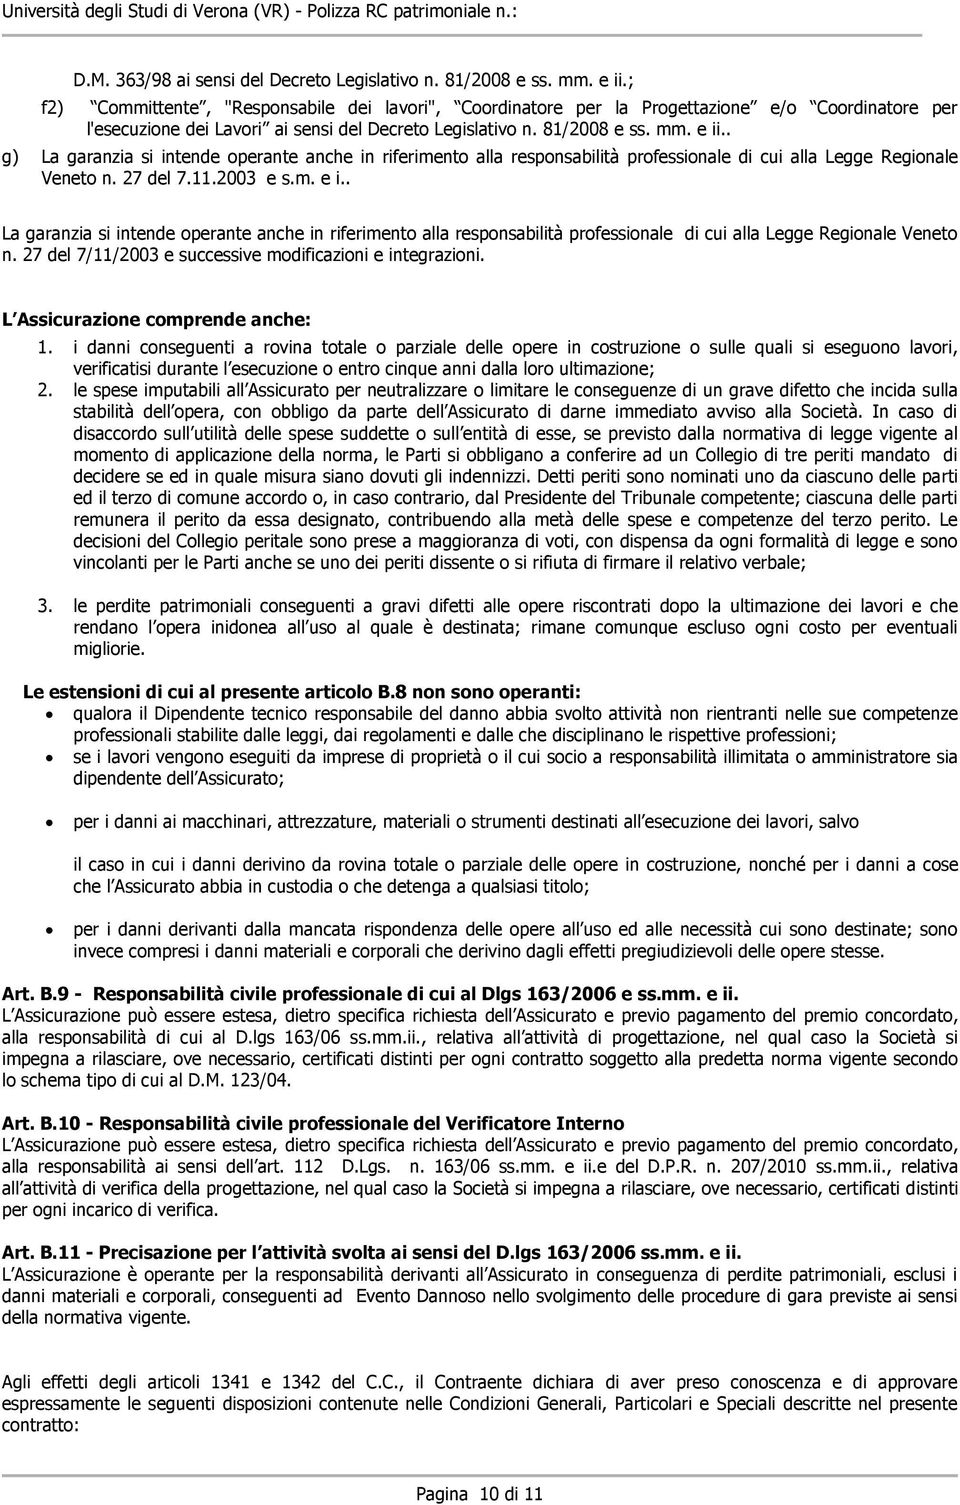 . g) La garanzia si intende operante anche in riferimento alla responsabilità professionale di cui alla Legge Regionale Veneto n. 27 del 7.11.2003 e s.m. e i.